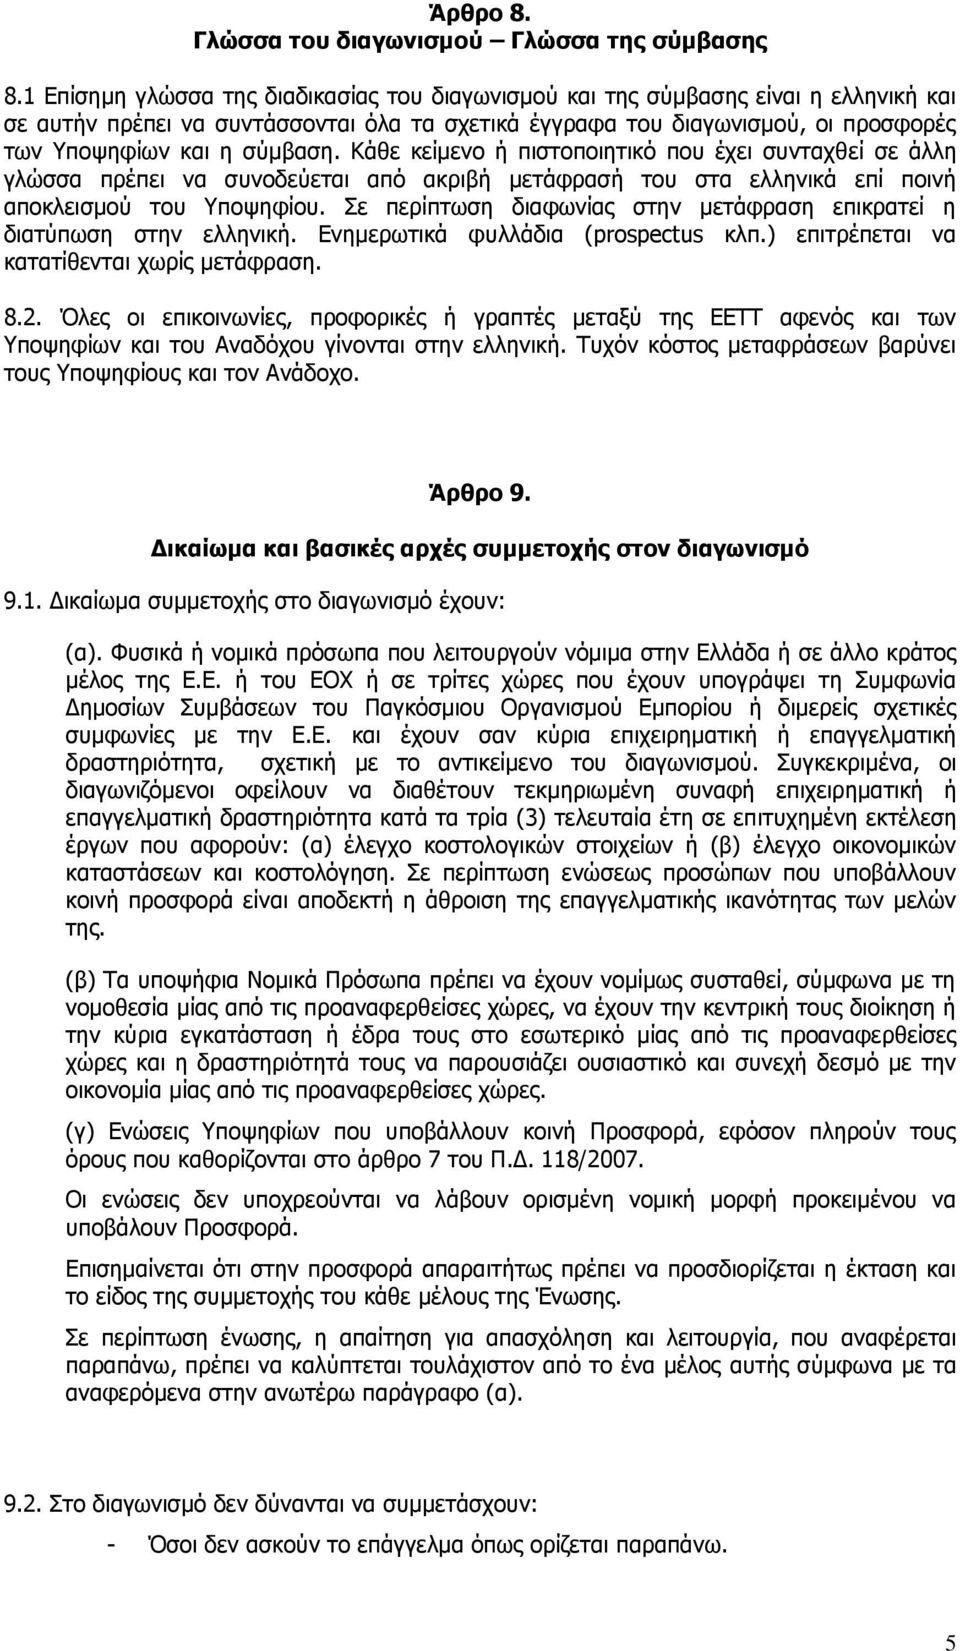 Κάθε κείμενο ή πιστοποιητικό που έχει συνταχθεί σε άλλη γλώσσα πρέπει να συνοδεύεται από ακριβή μετάφρασή του στα ελληνικά επί ποινή αποκλεισμού του Υποψηφίου.